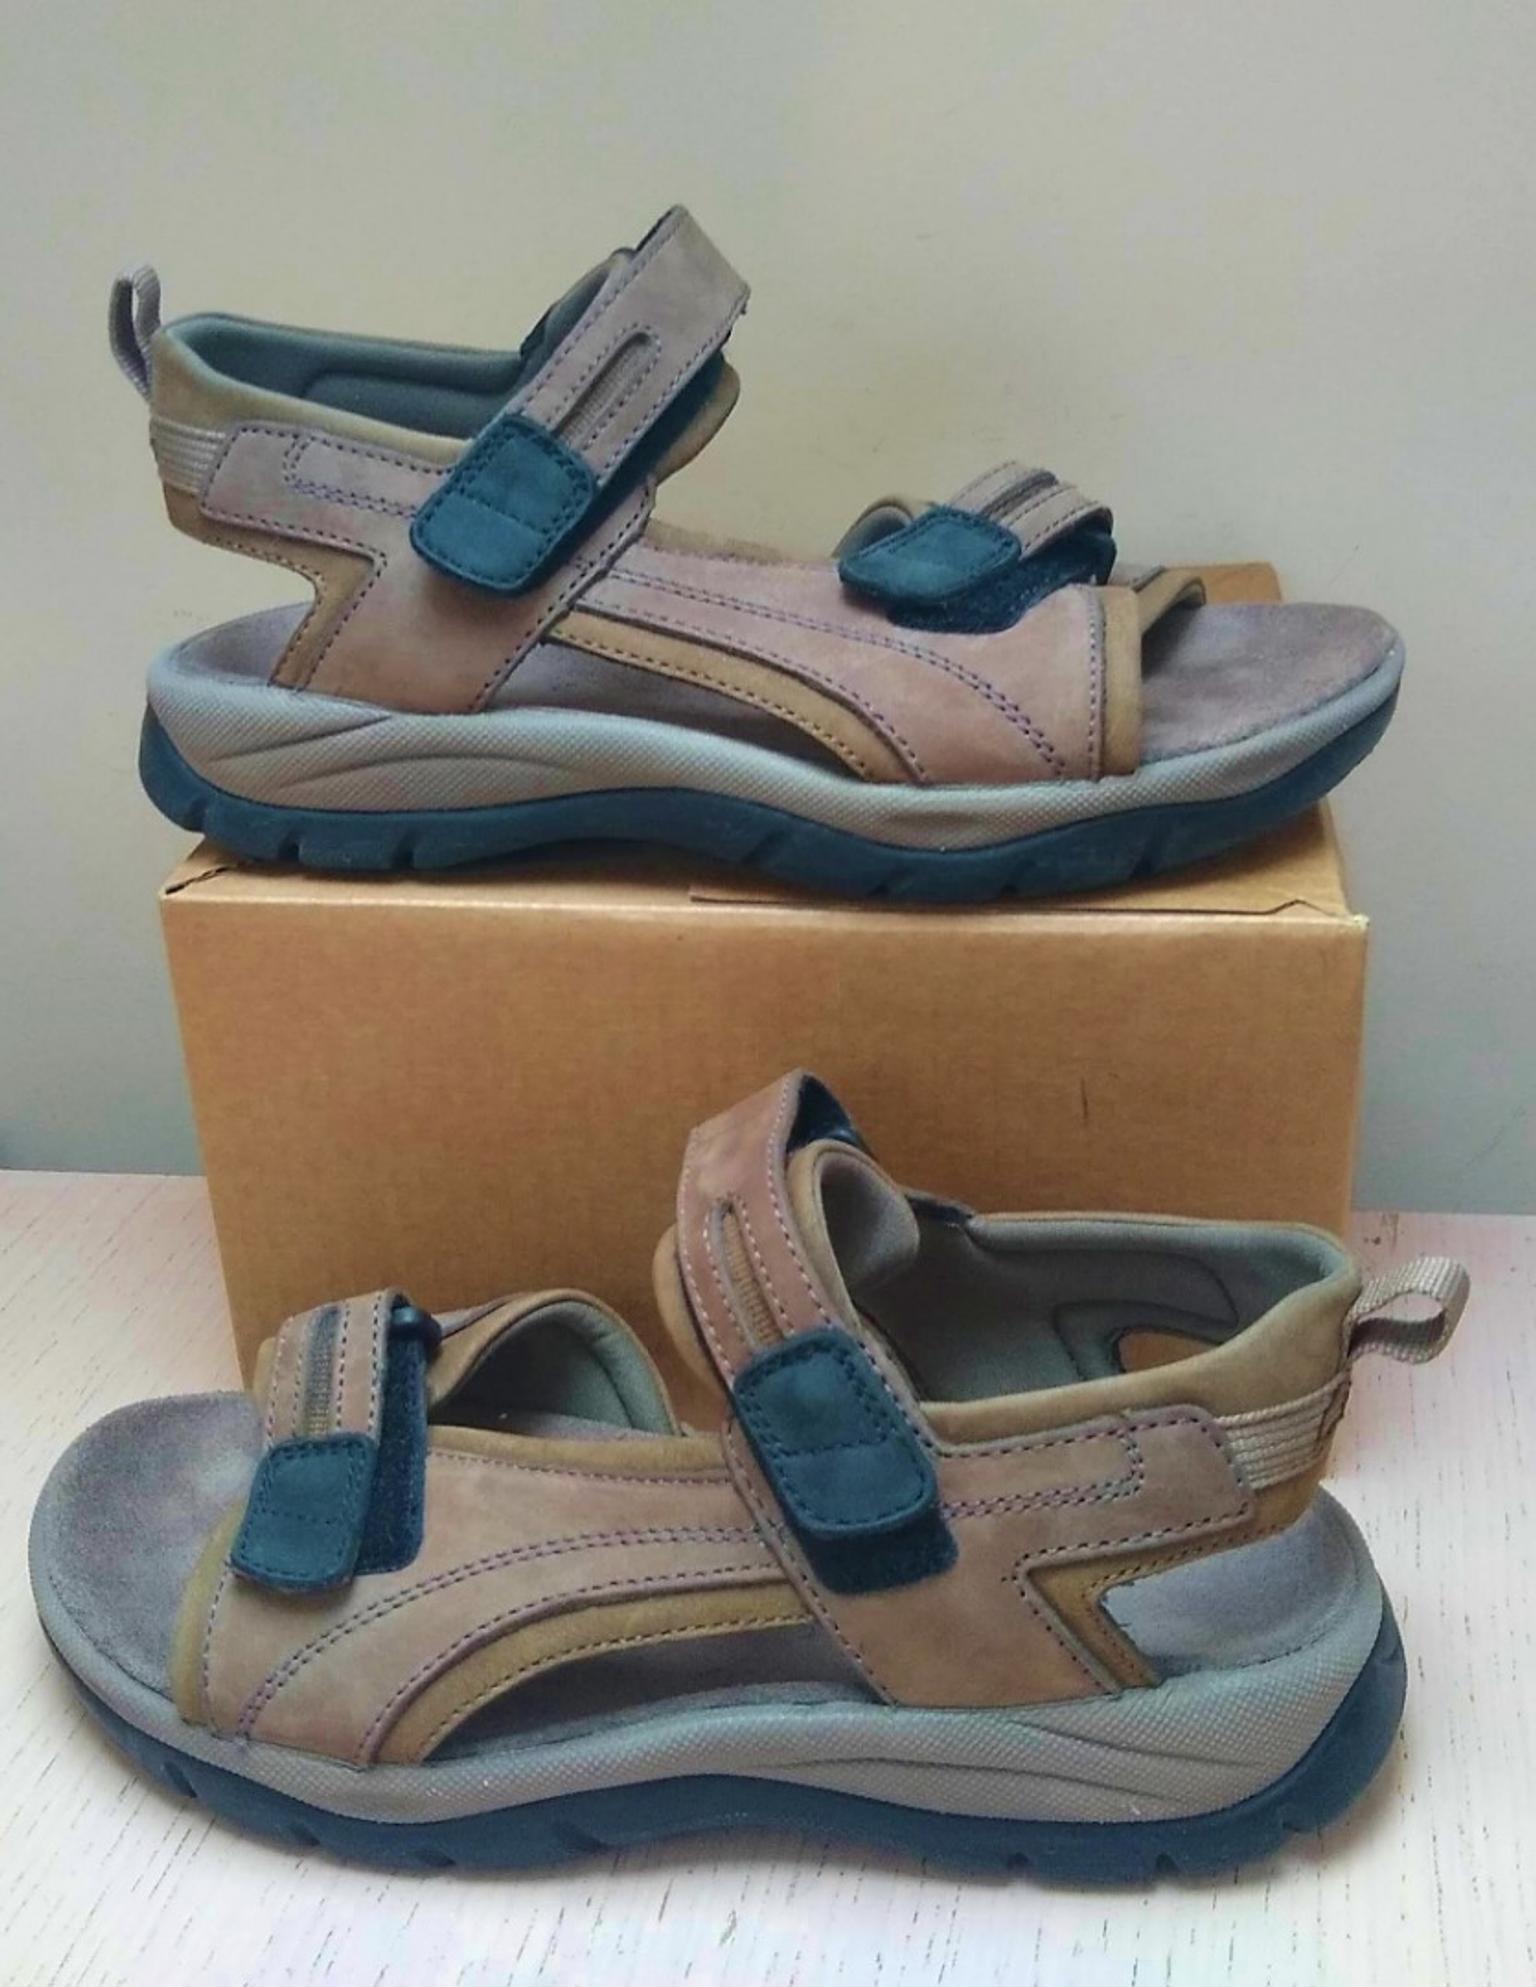 clarks active sandals